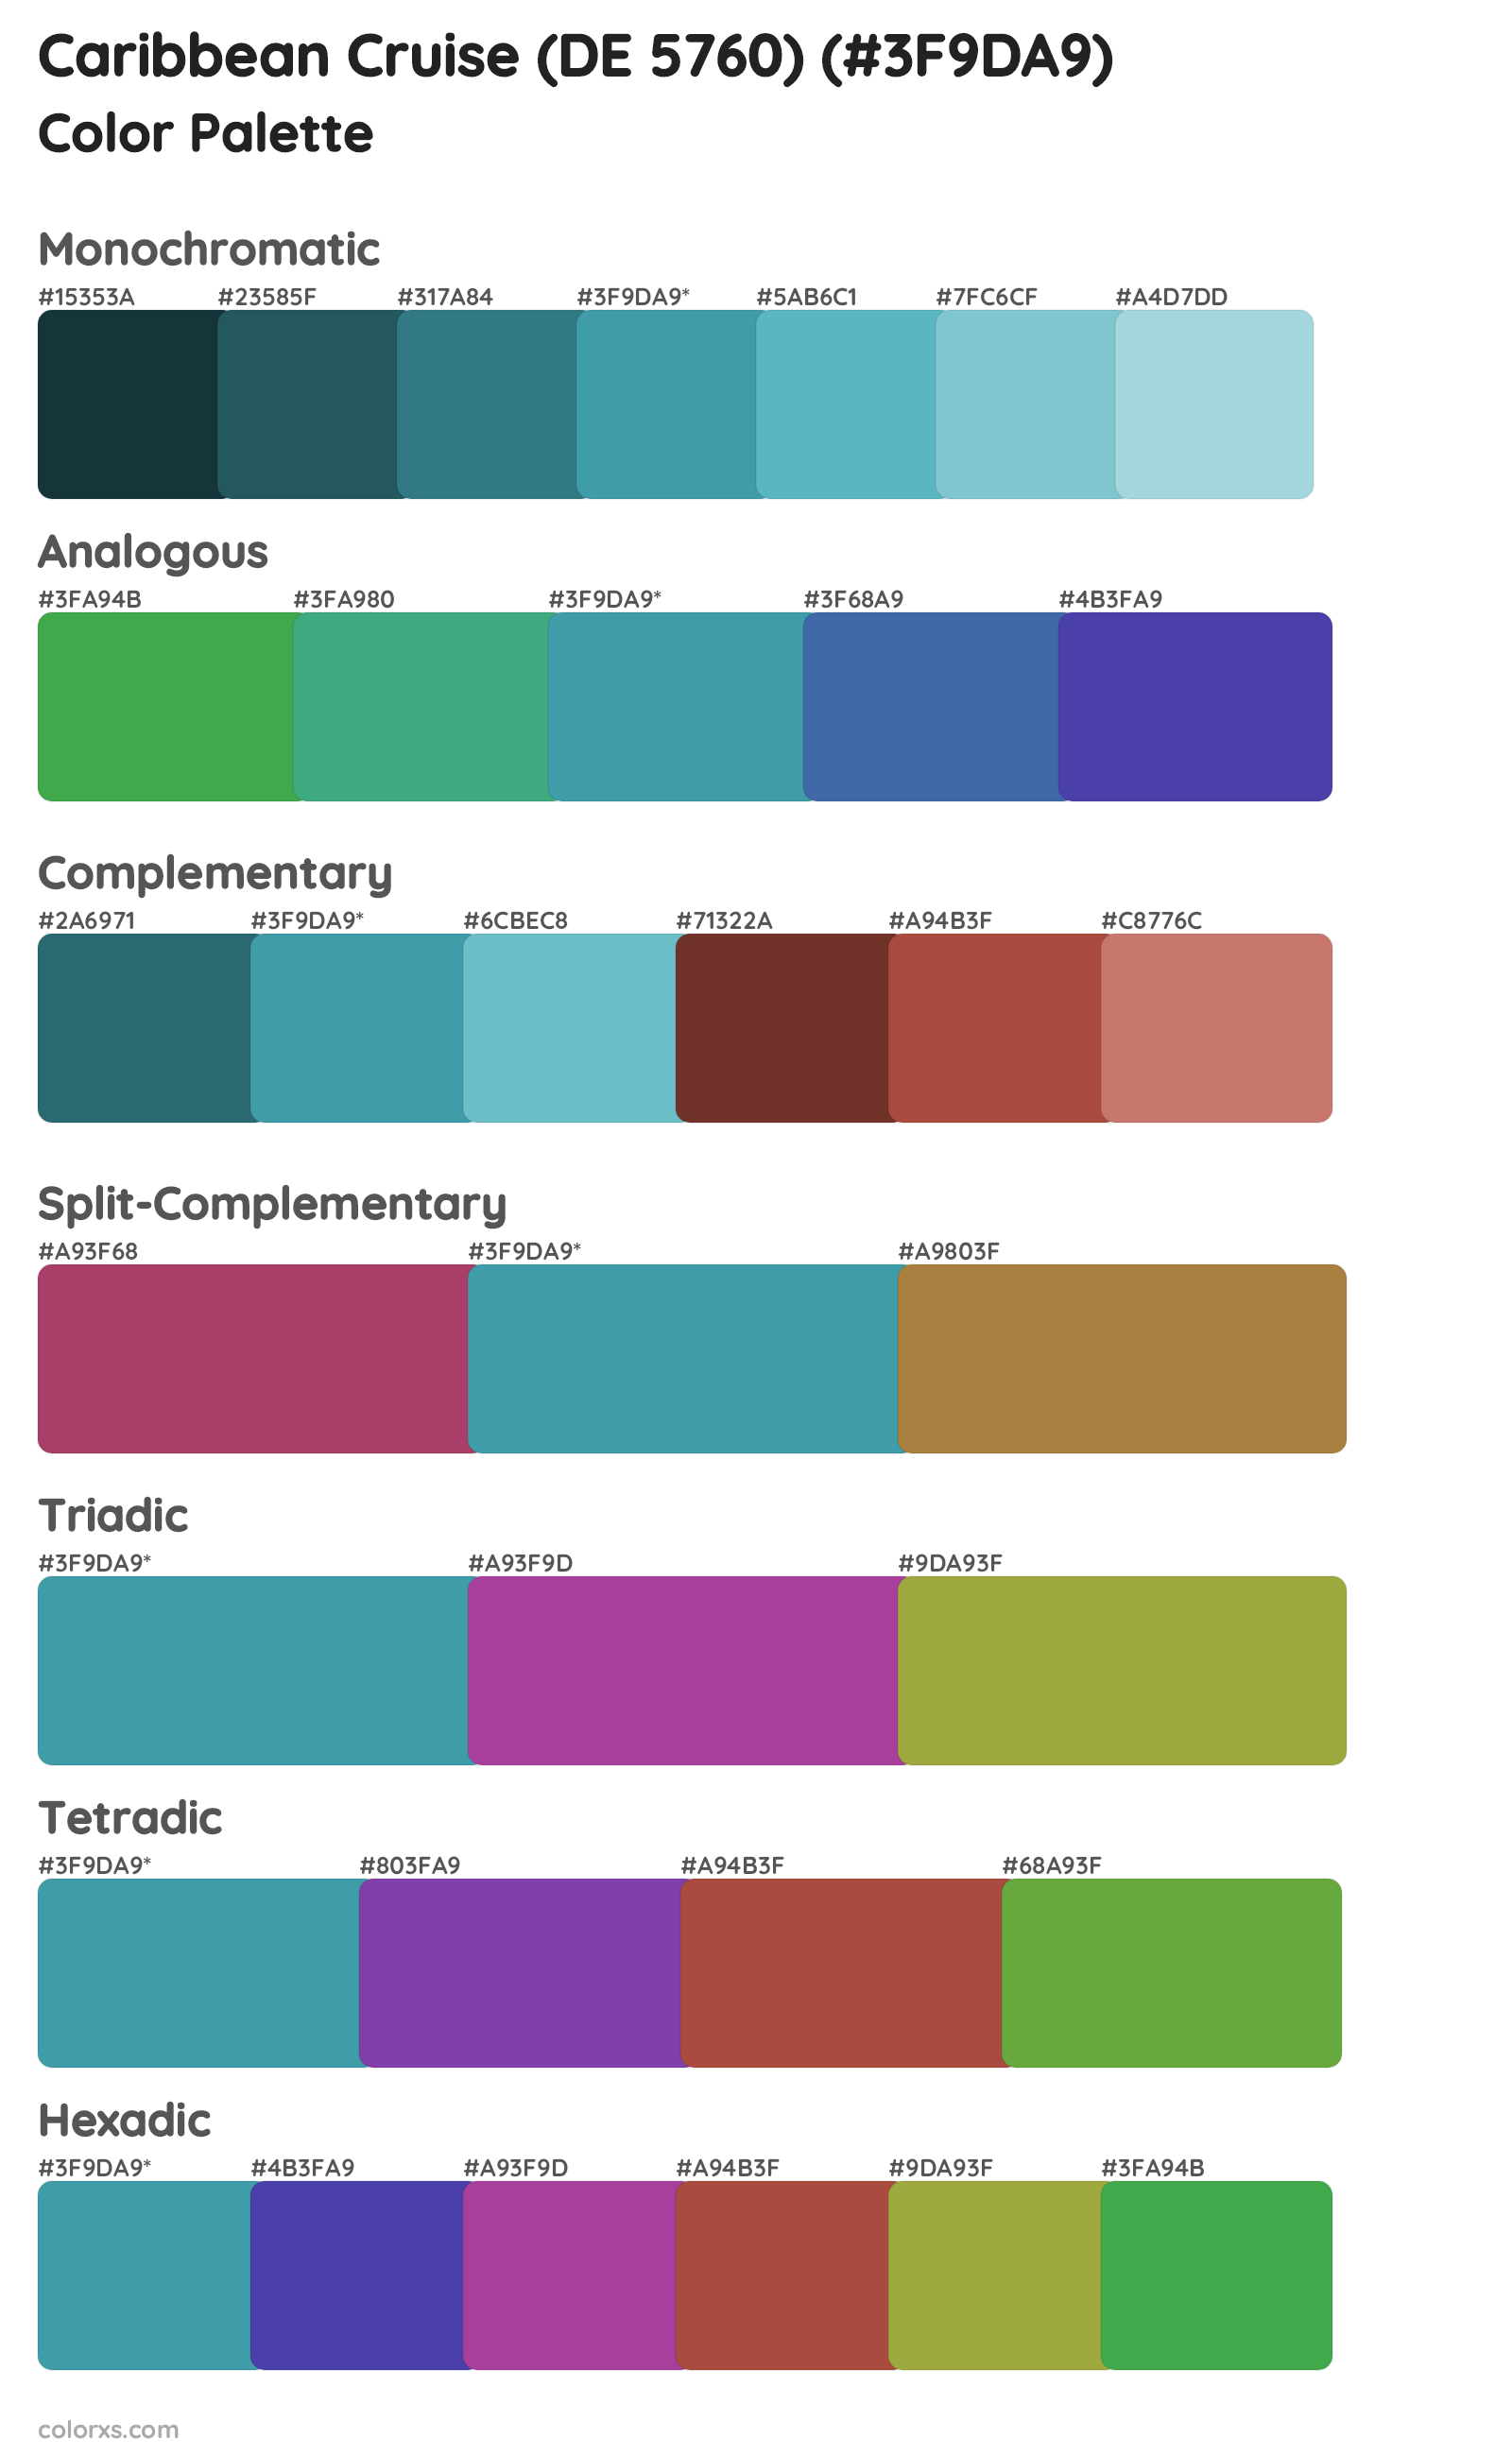 Caribbean Cruise (DE 5760) Color Scheme Palettes